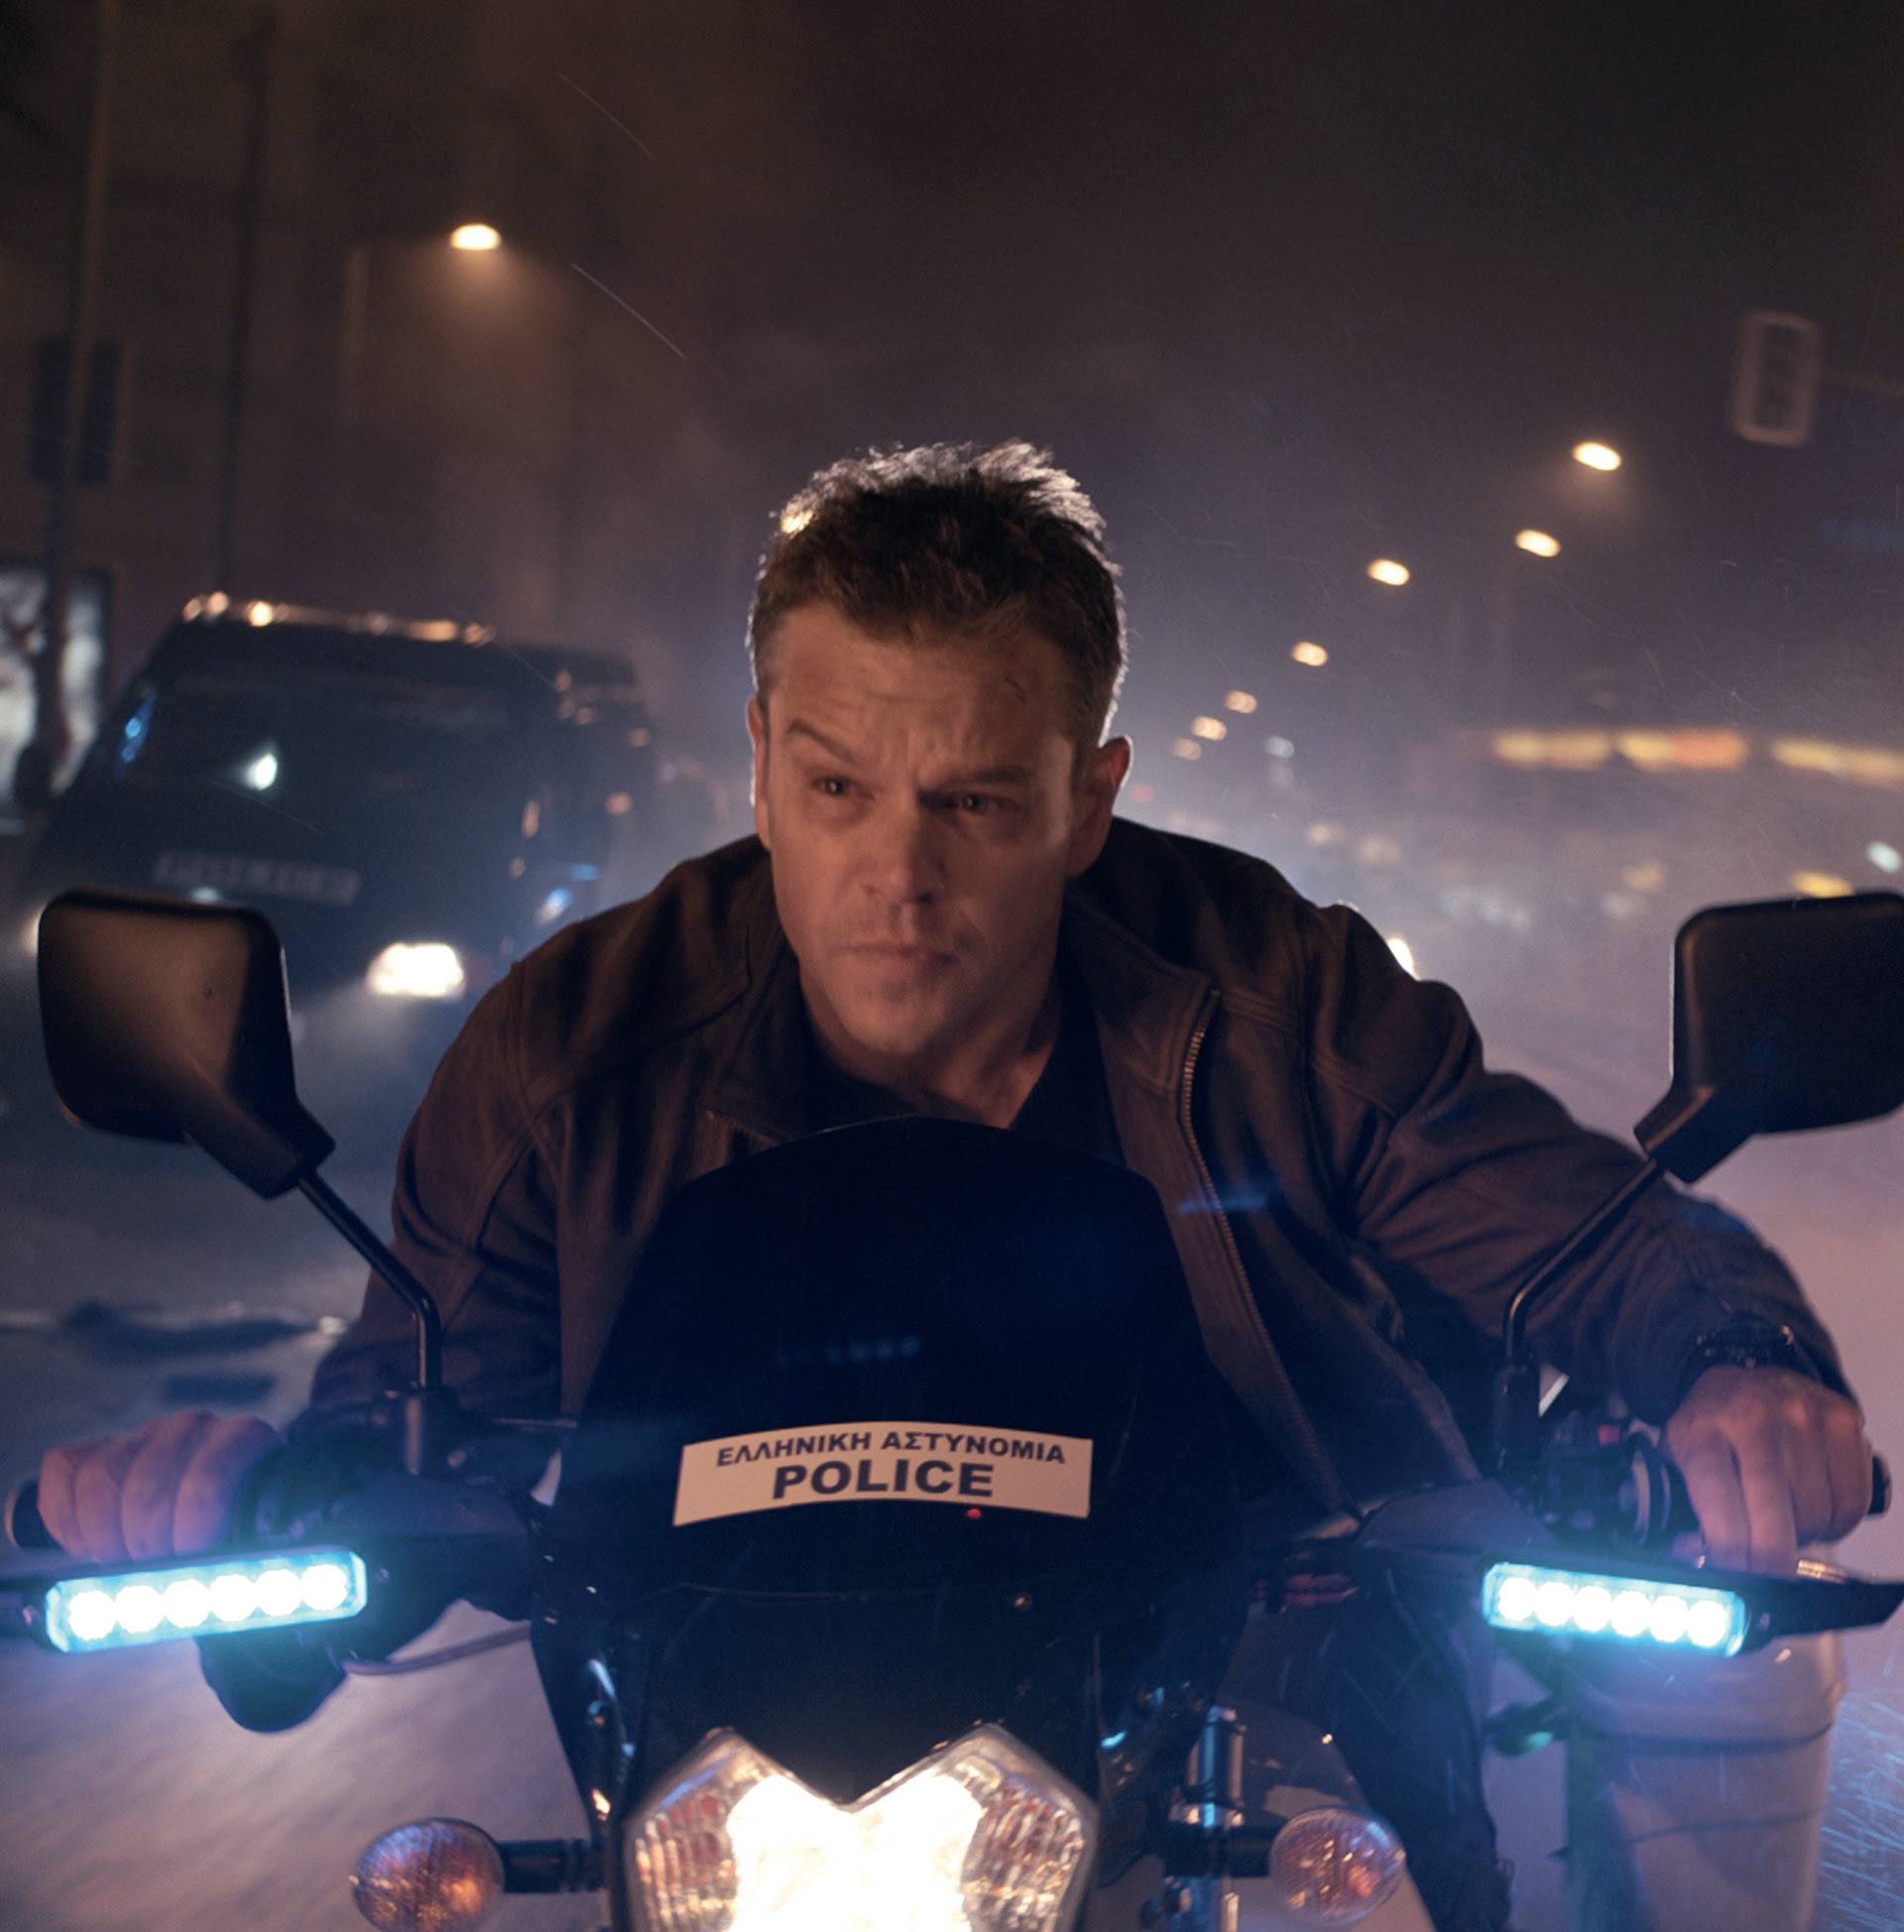 'Jason Bourne': Najubojitije se oružje pobunilo protiv tvoraca